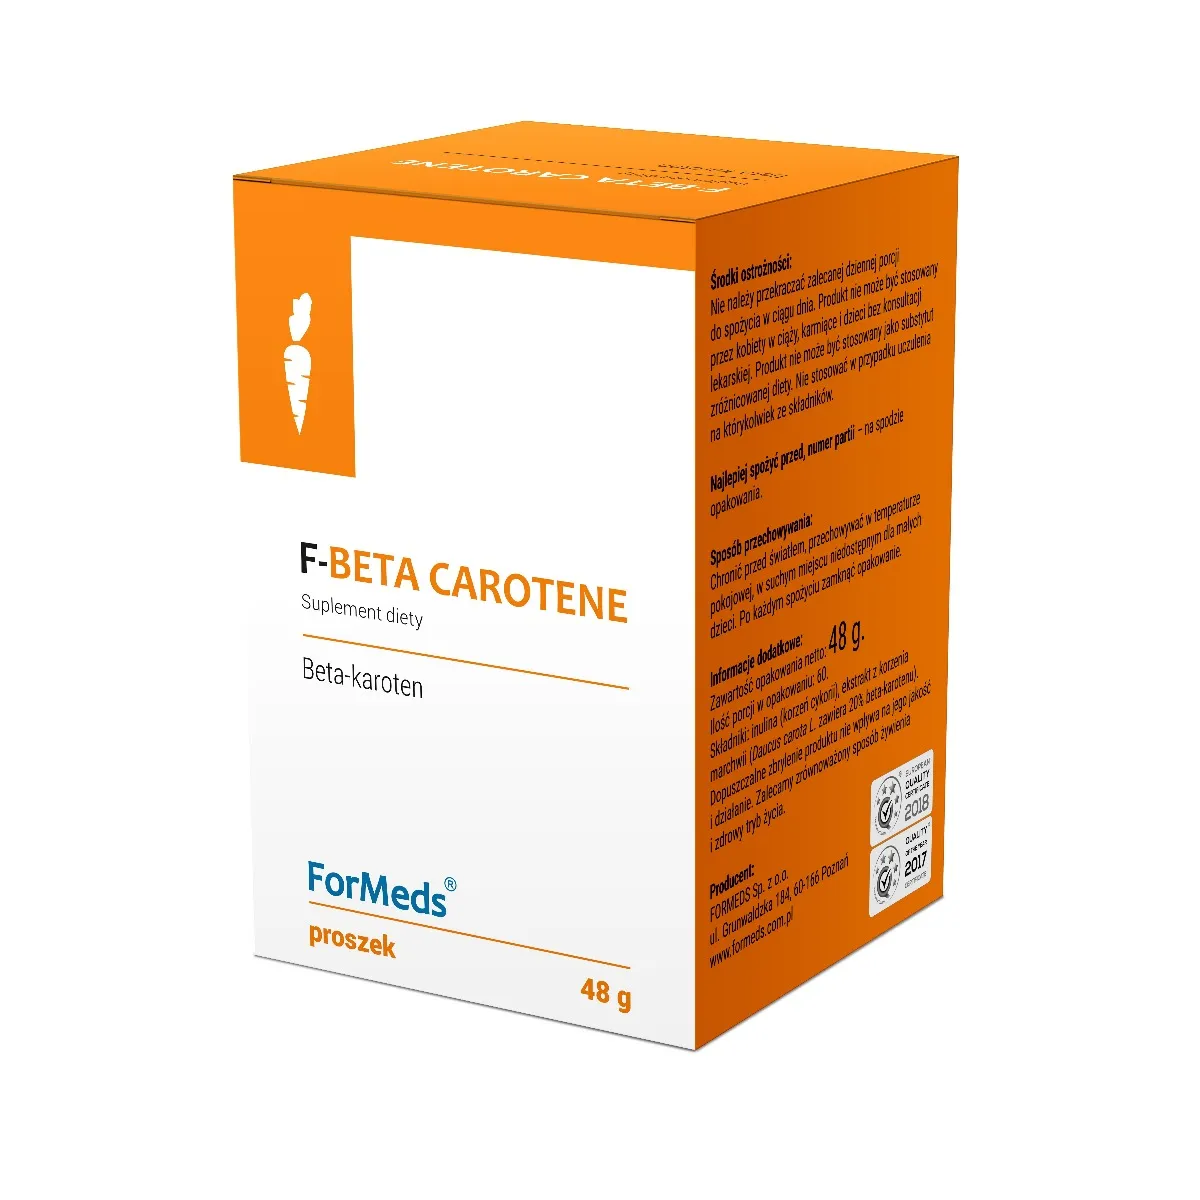 ForMeds F-Beta Carotene, suplement diety, proszek, 60 porcji. Data ważności 01.05.2023